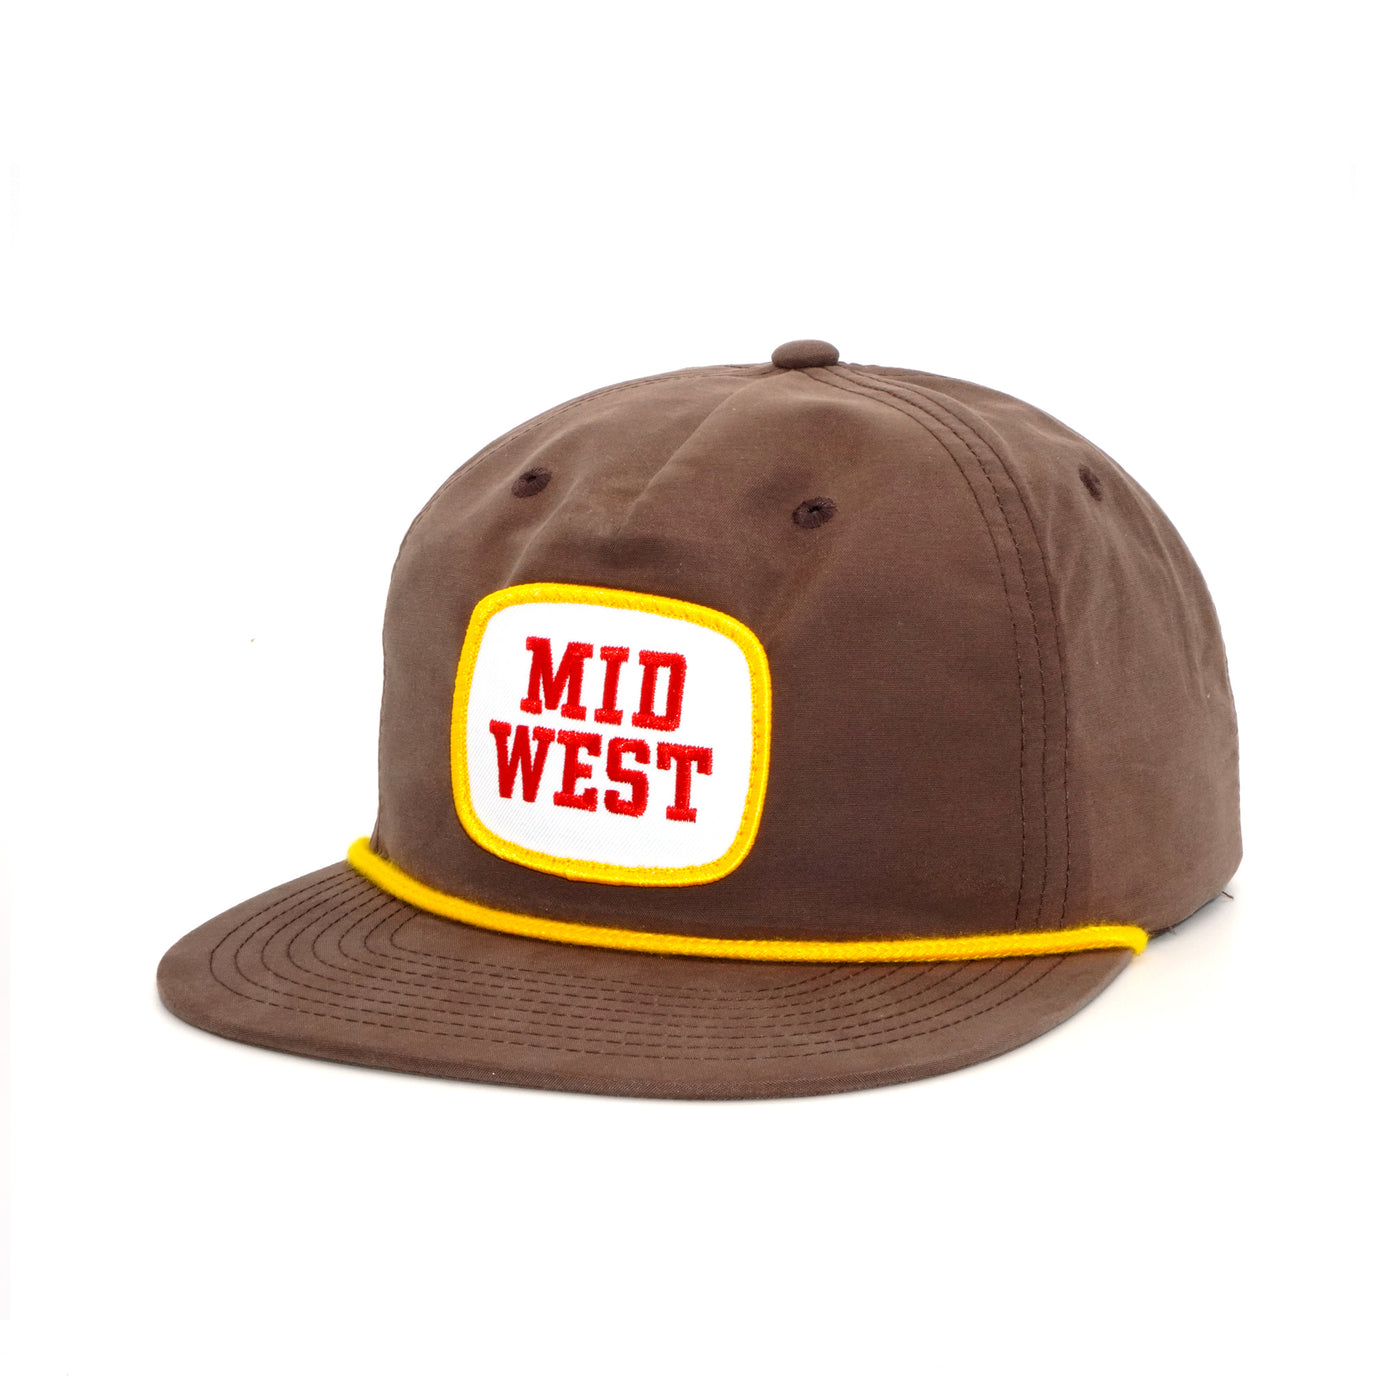 Midwest Brown Snapback Cap